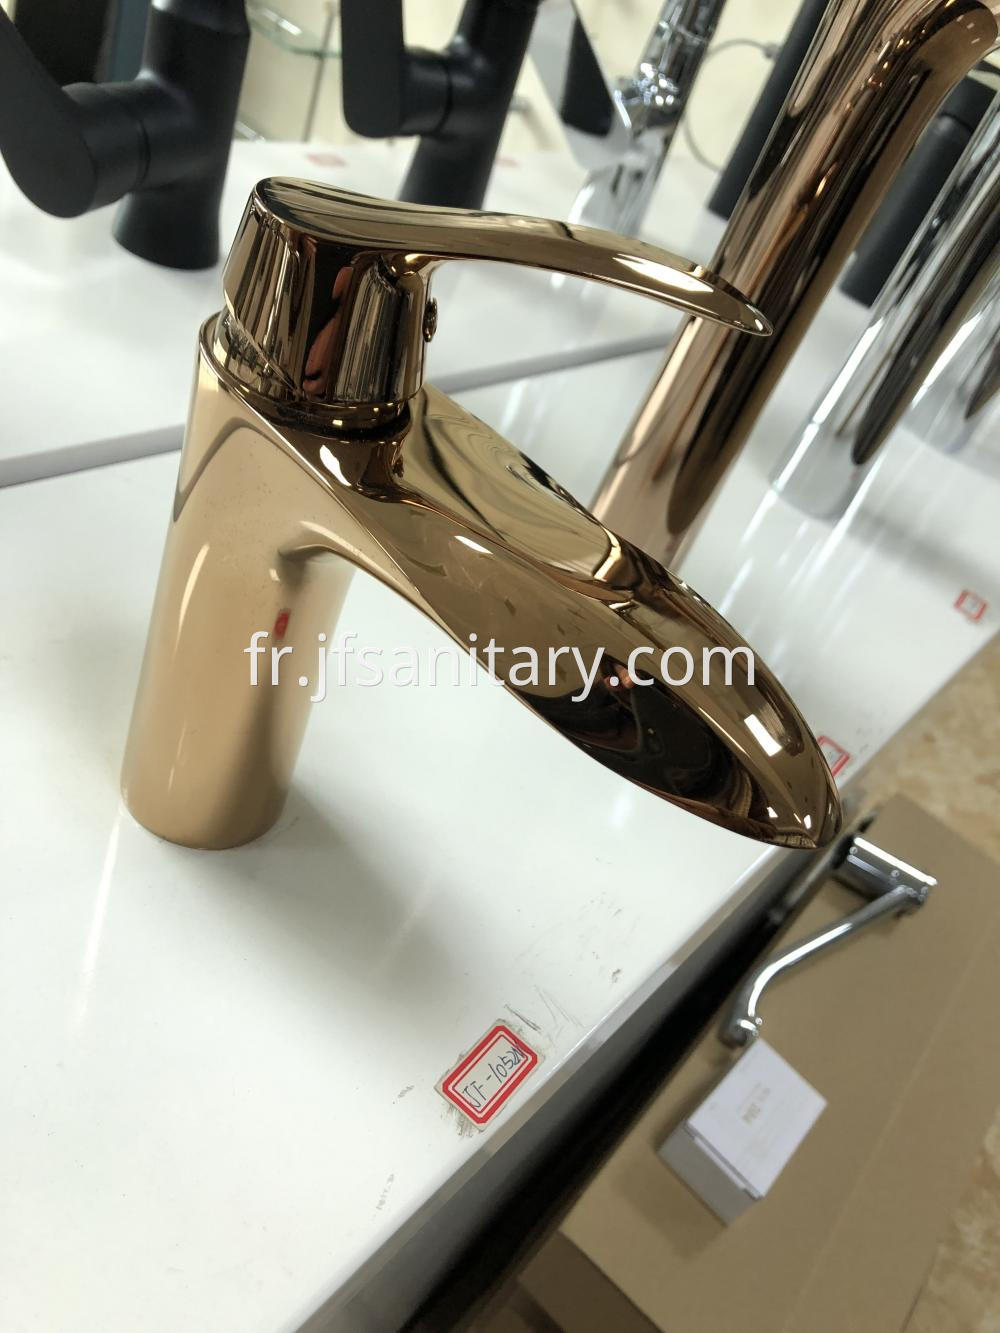 Luxury Brass Unique Design Wash Basin Faucets